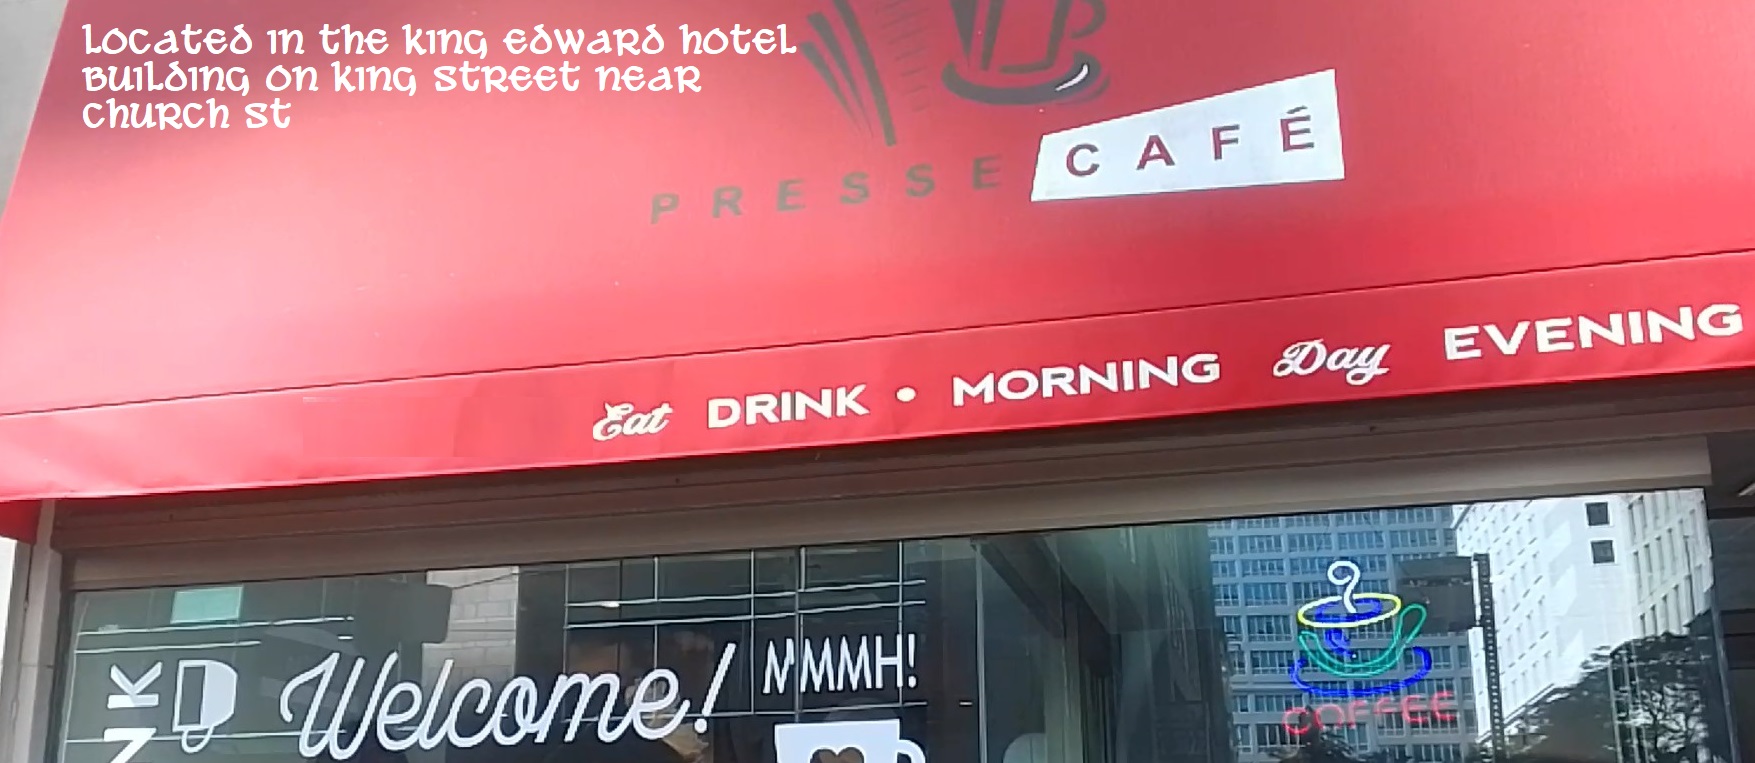 King Edward hotel cafe location